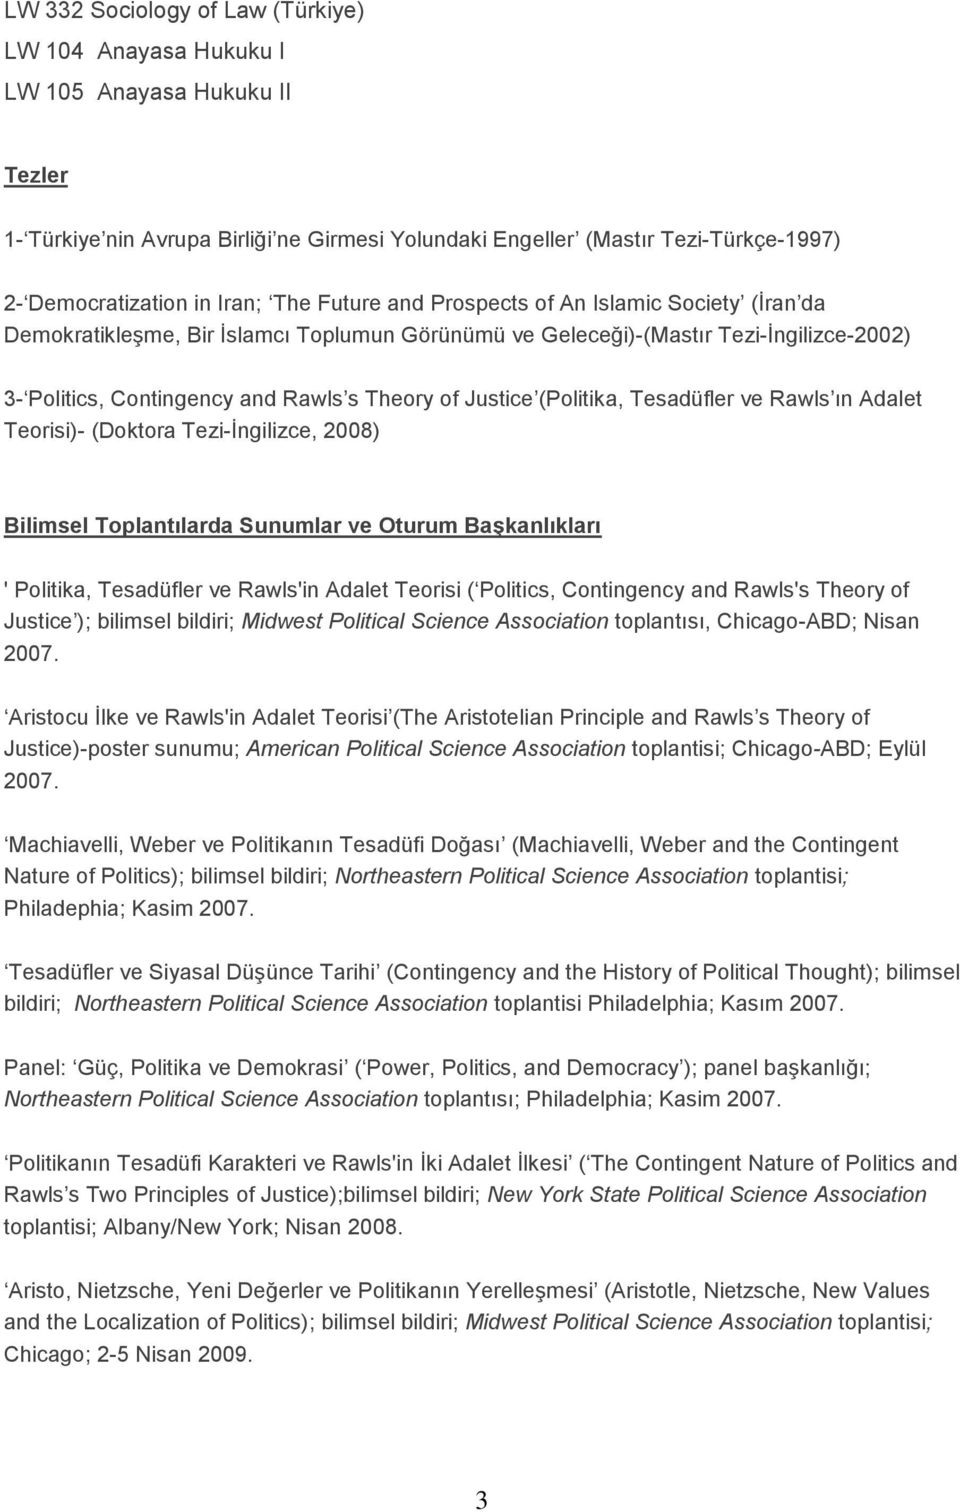 Justice (Politika, Tesadüfler ve Rawls ın Adalet Teorisi)- (Doktora Tezi-İngilizce, 2008) Bilimsel Toplantılarda Sunumlar ve Oturum Başkanlıkları ' Politika, Tesadüfler ve Rawls'in Adalet Teorisi (